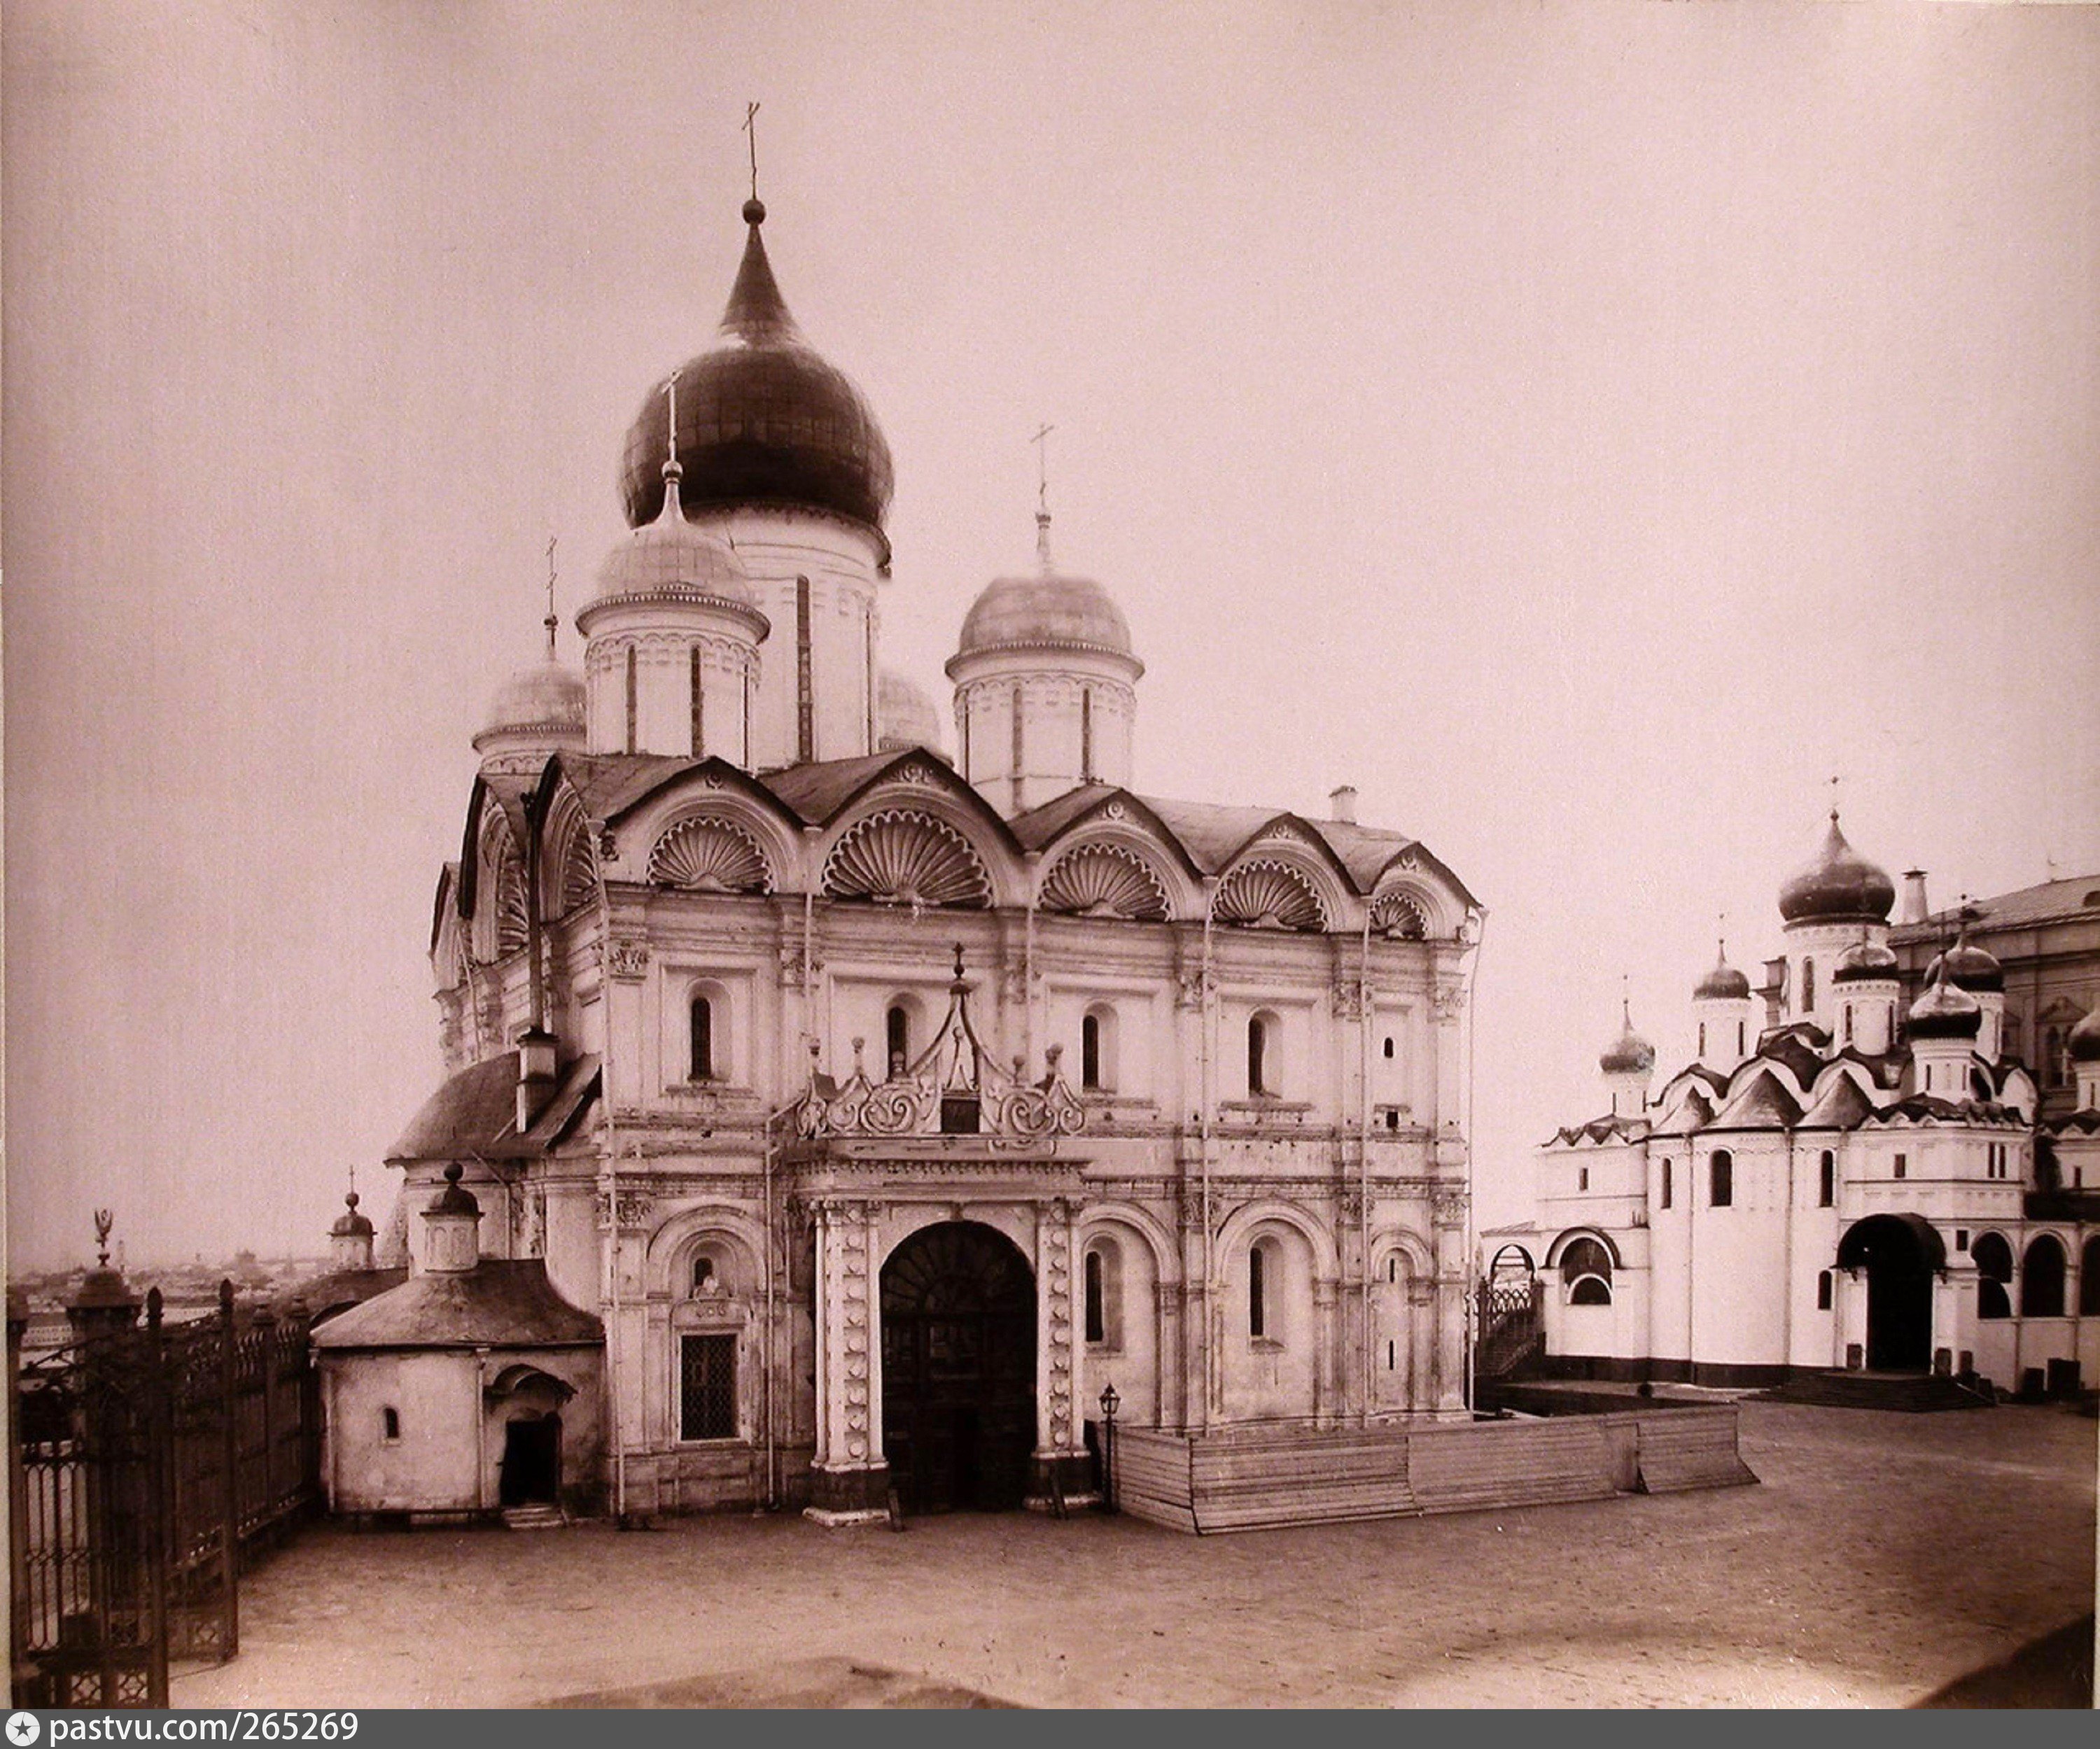 Архангельский собор Московского Кремля 16 век